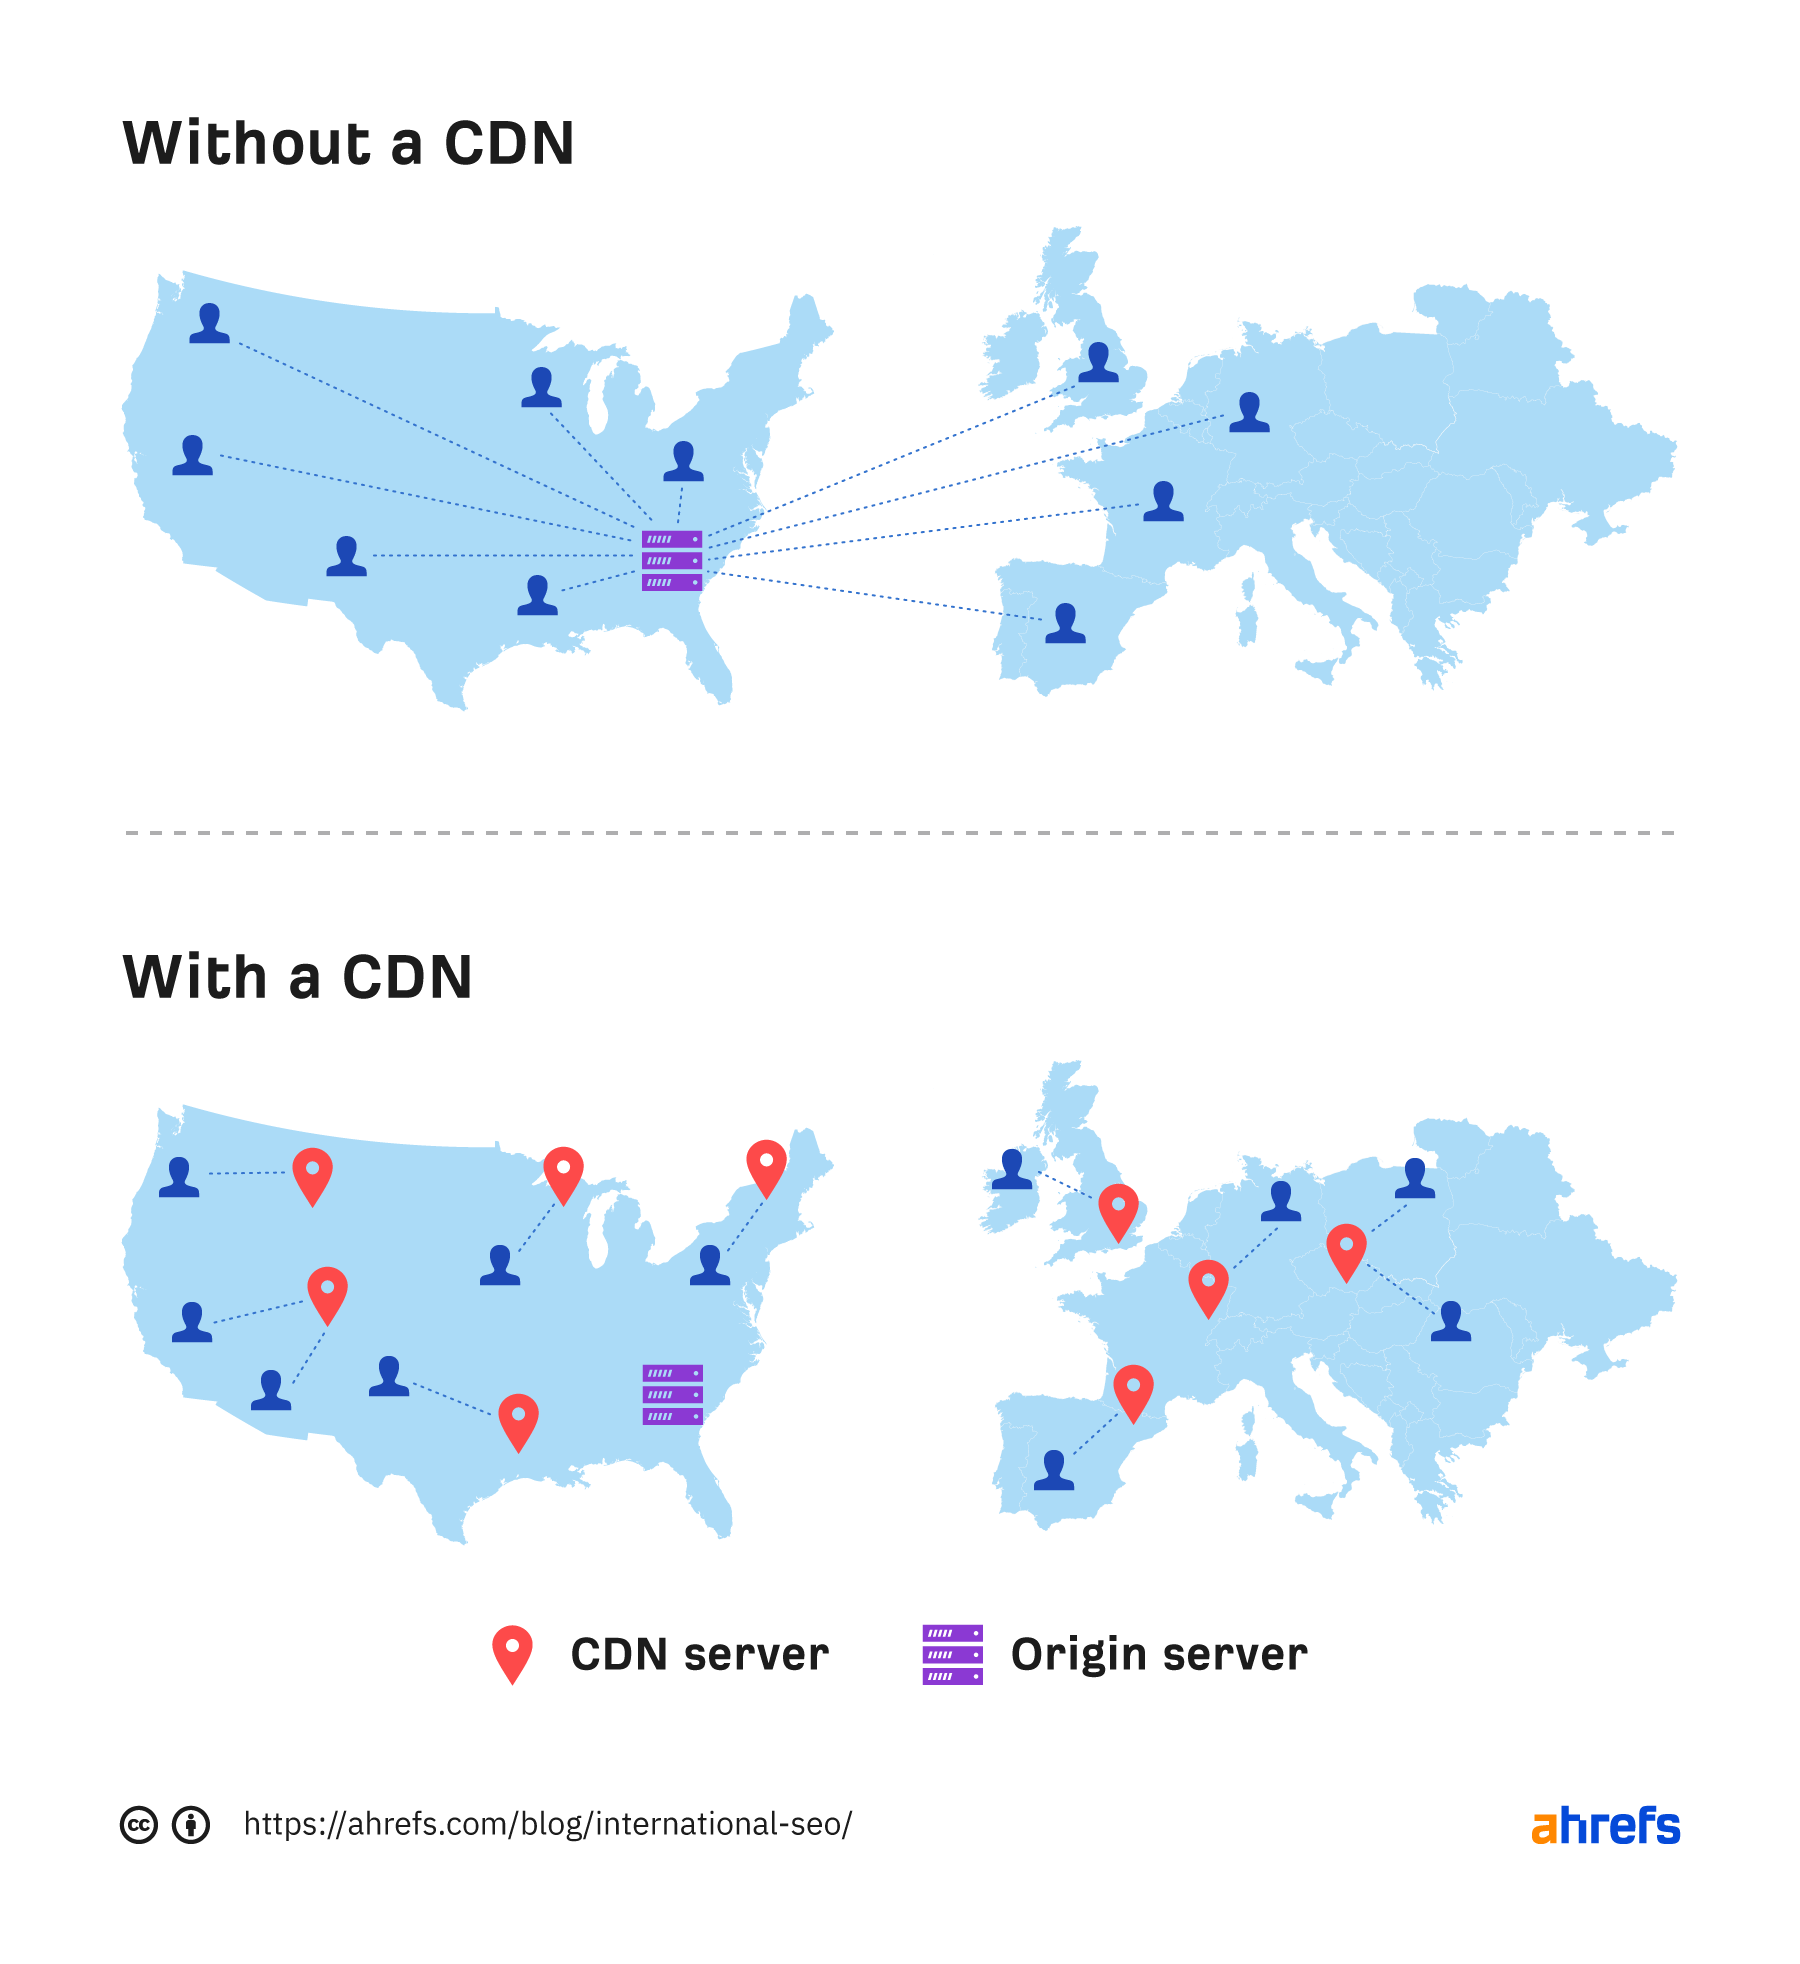 How a CDN works
